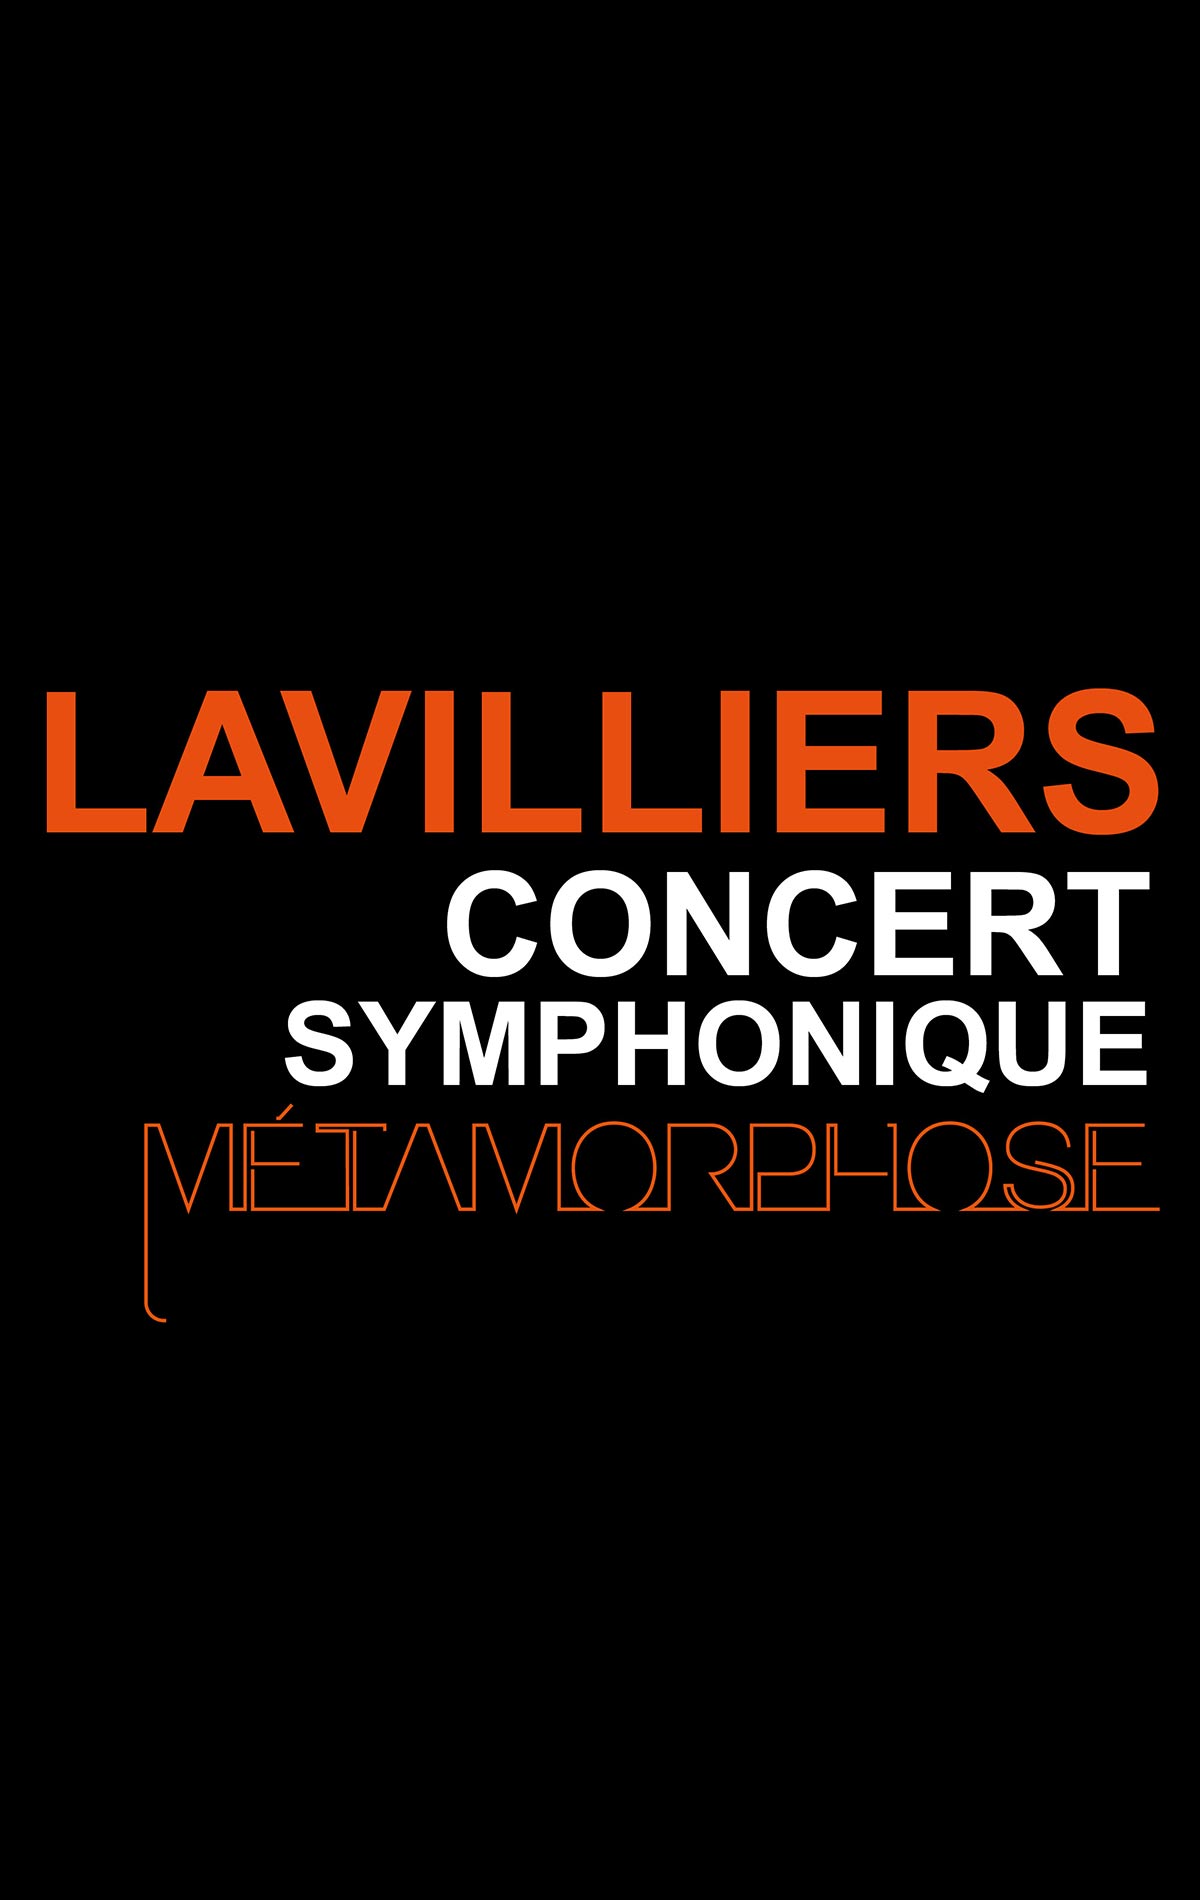 Bernard Lavilliers al Nouveau Siècle Tickets